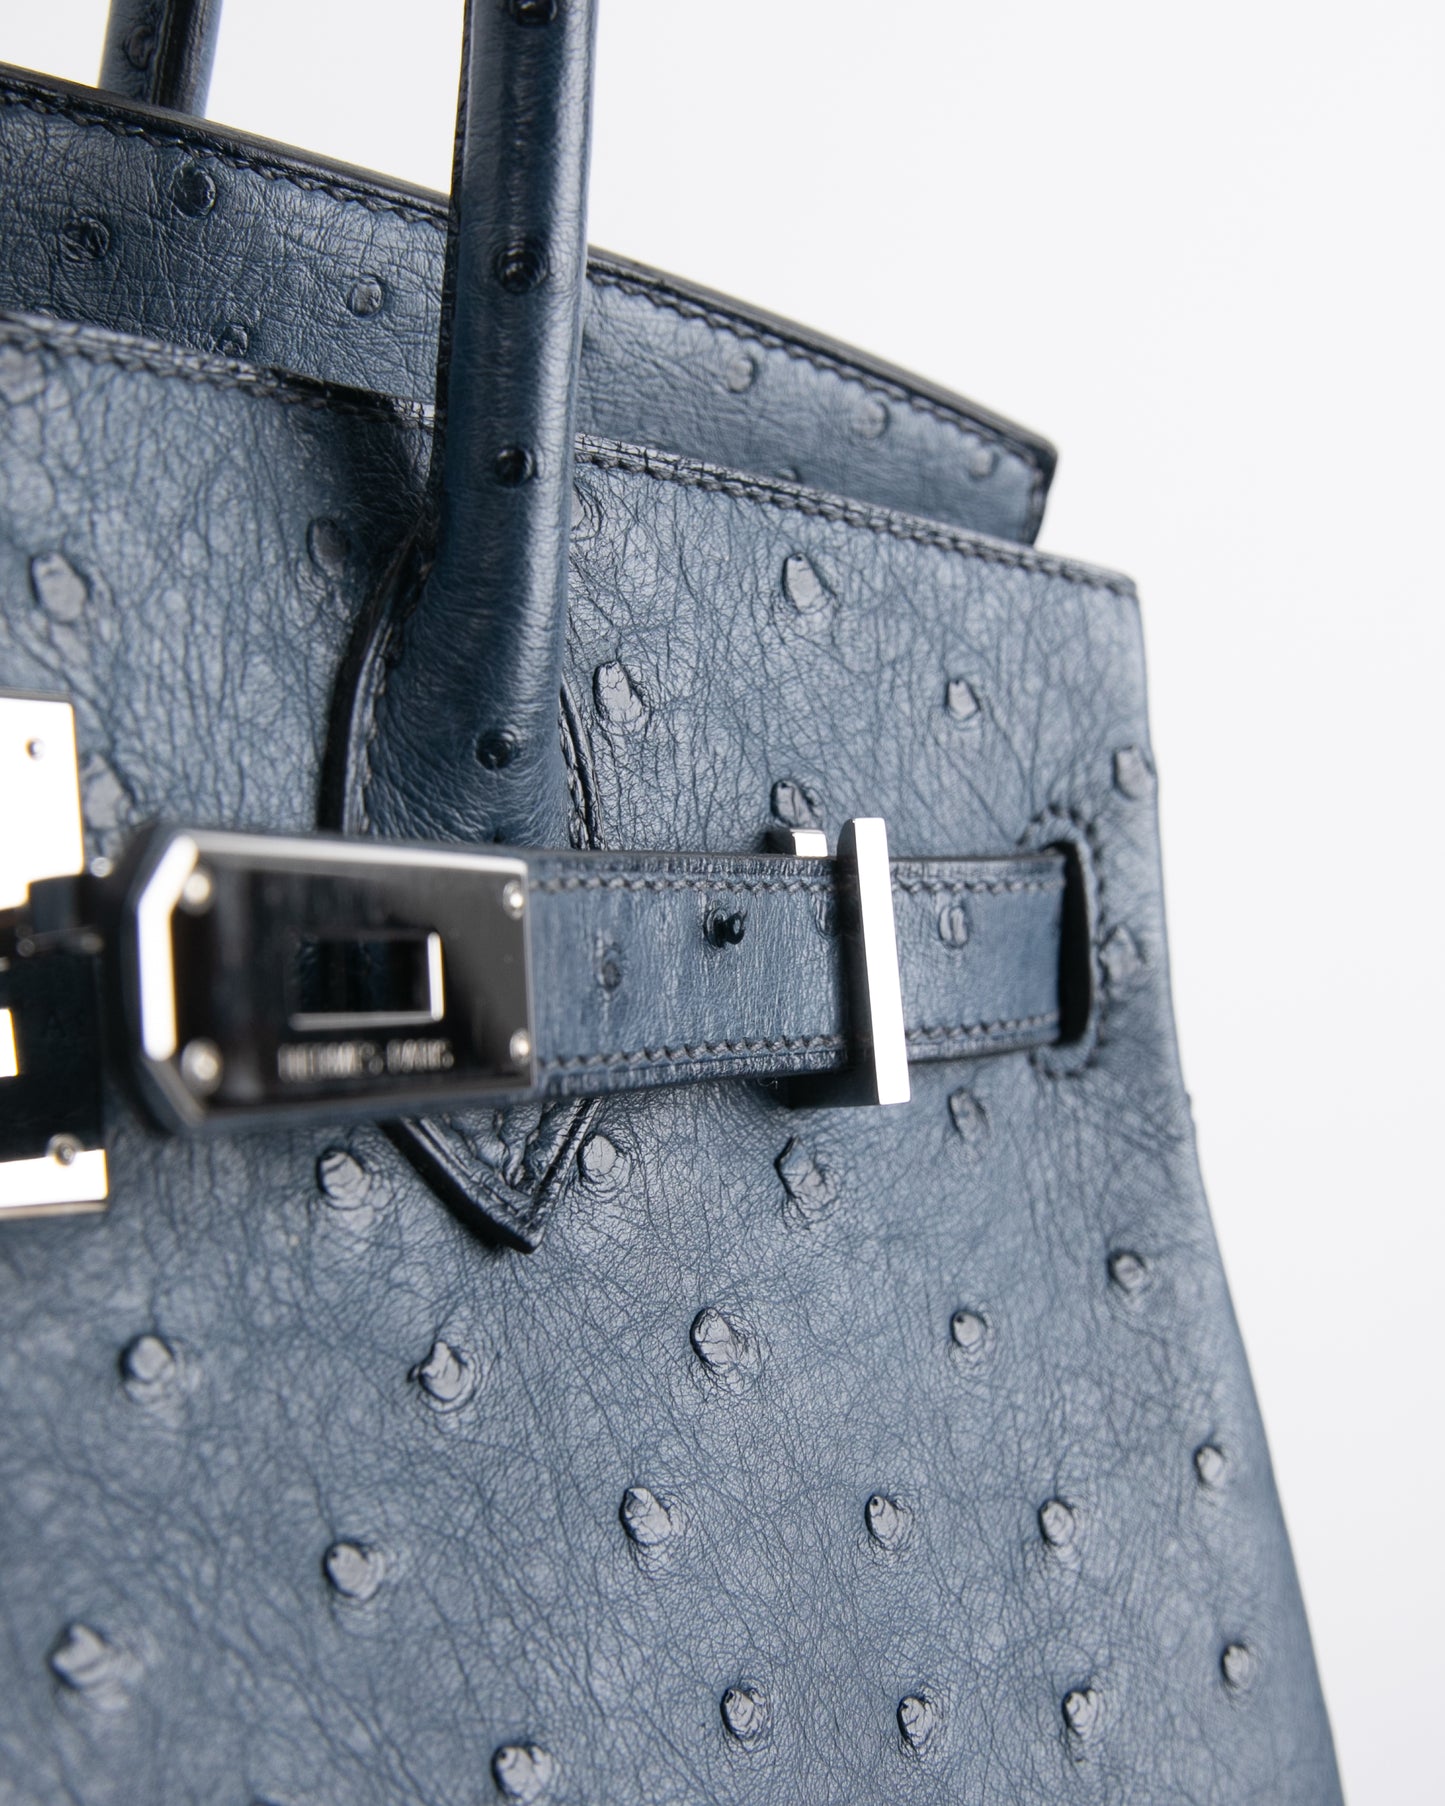 Hermes 35cm Blue Roi Ostrich Birkin Bag with Palladium Hardware., Lot  #56154